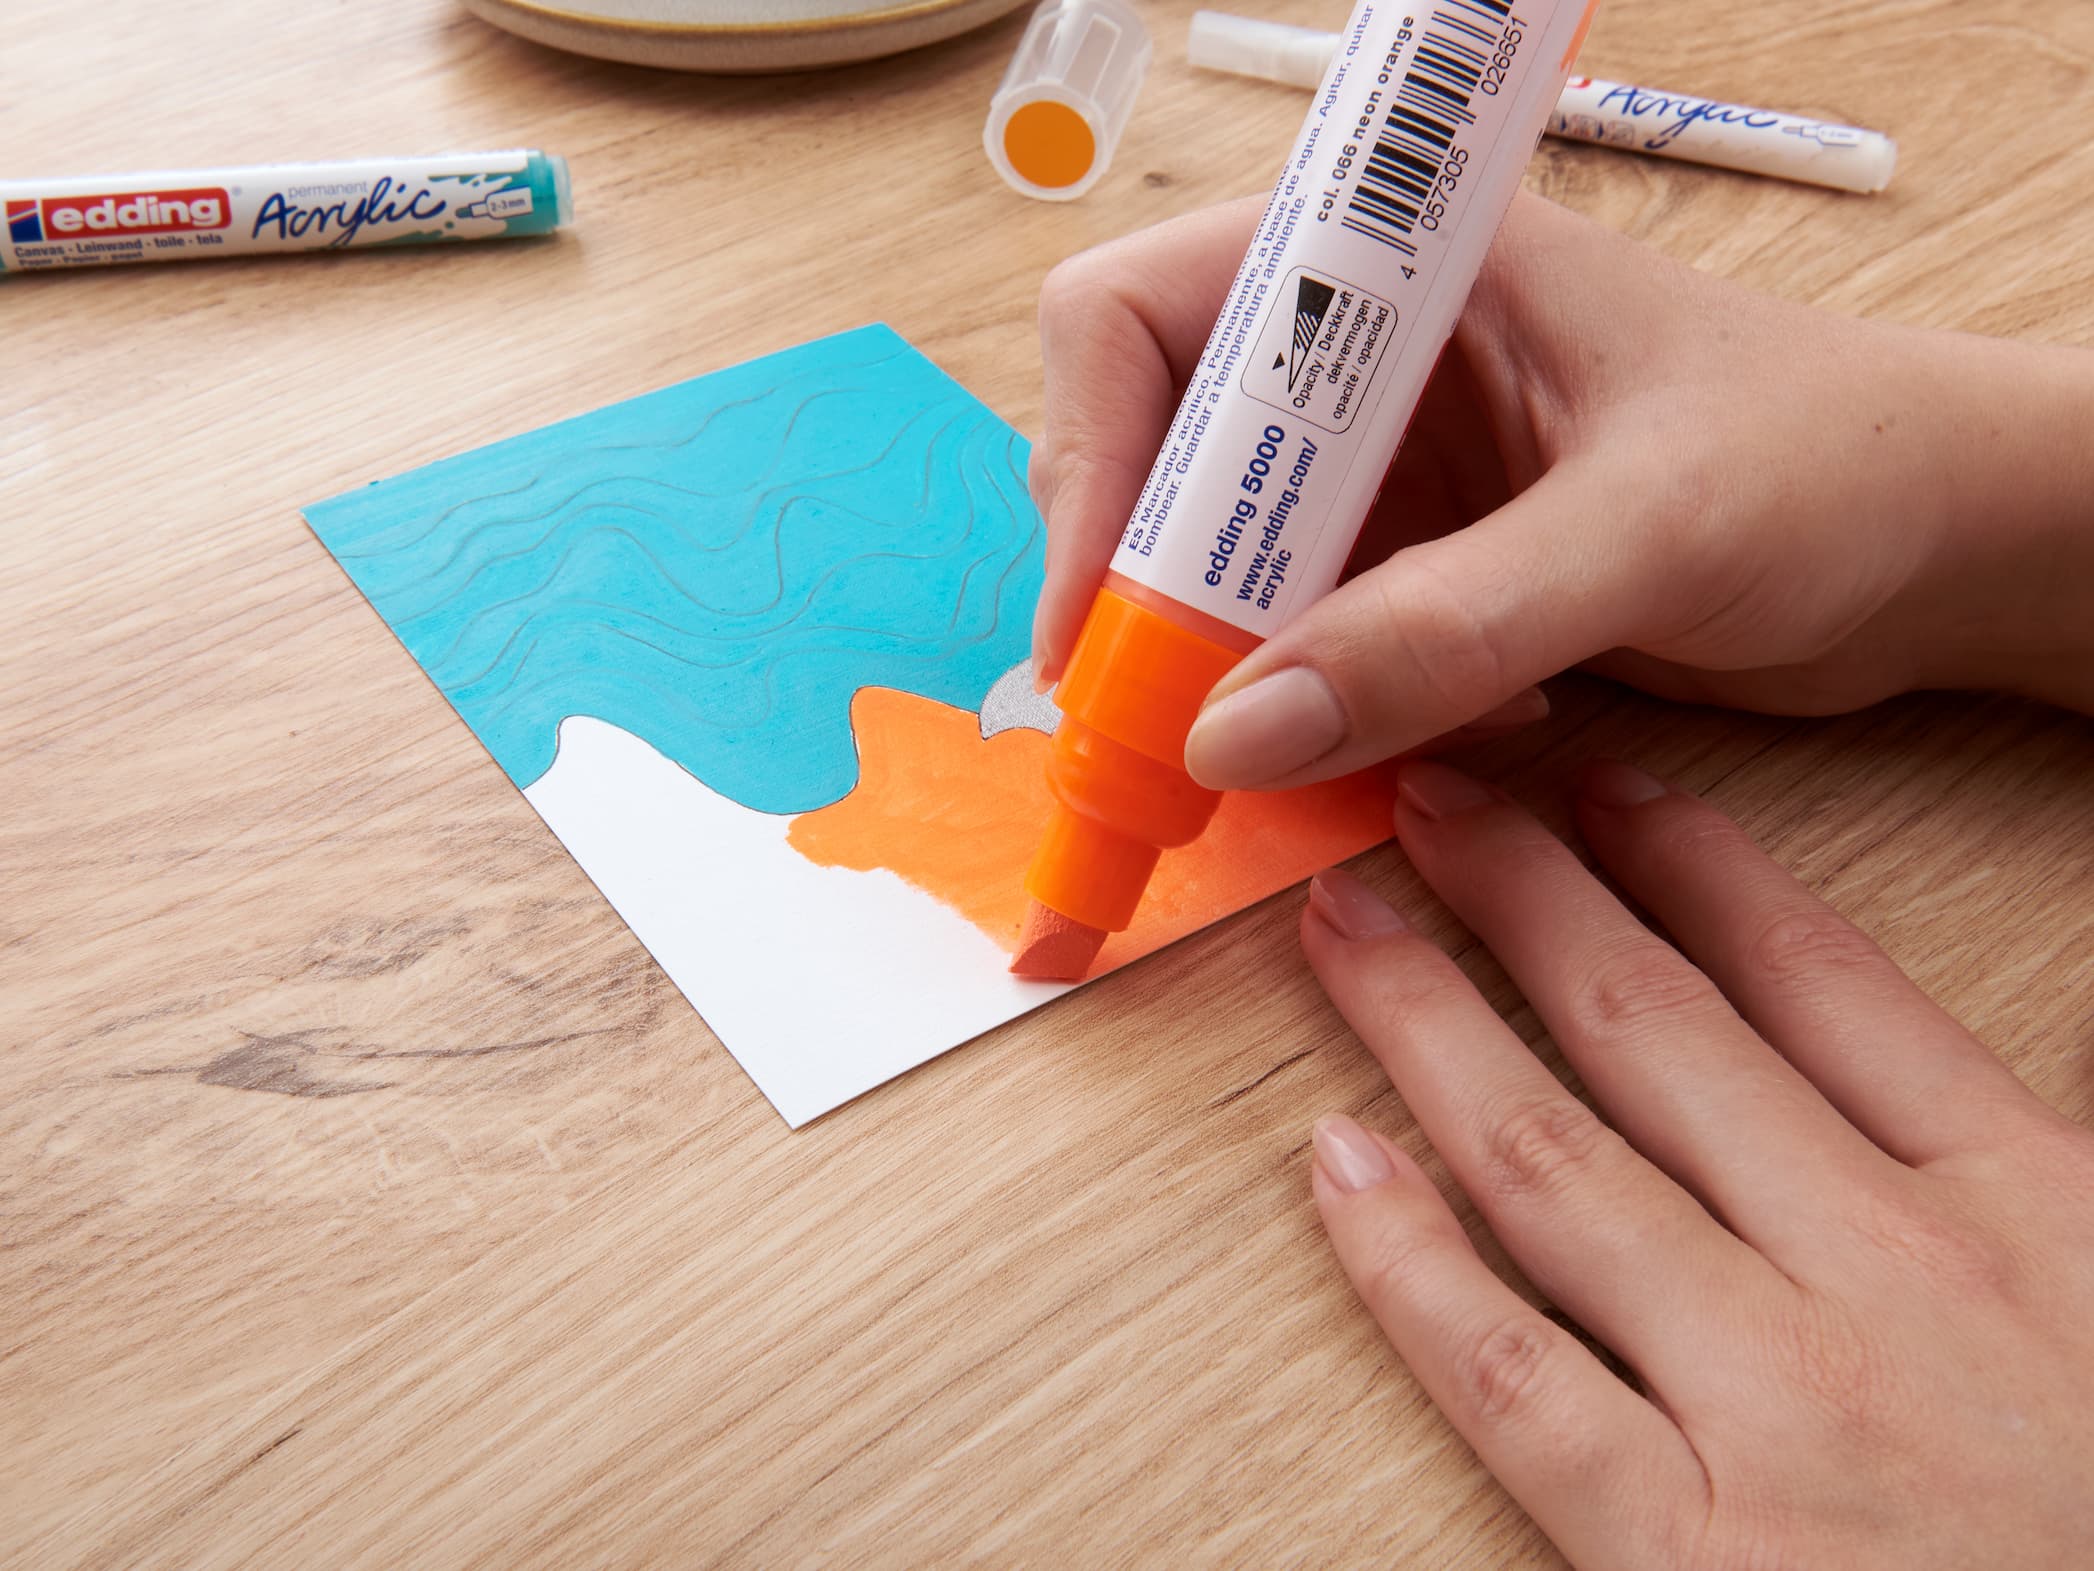 Eine Person hält einen edding 5000 Acrylmarker breit in der Hand und fügt einem abstrakten blauen und orangefarbenen Kunstwerk auf einem Holztisch eine lebendige Ebene hinzu.